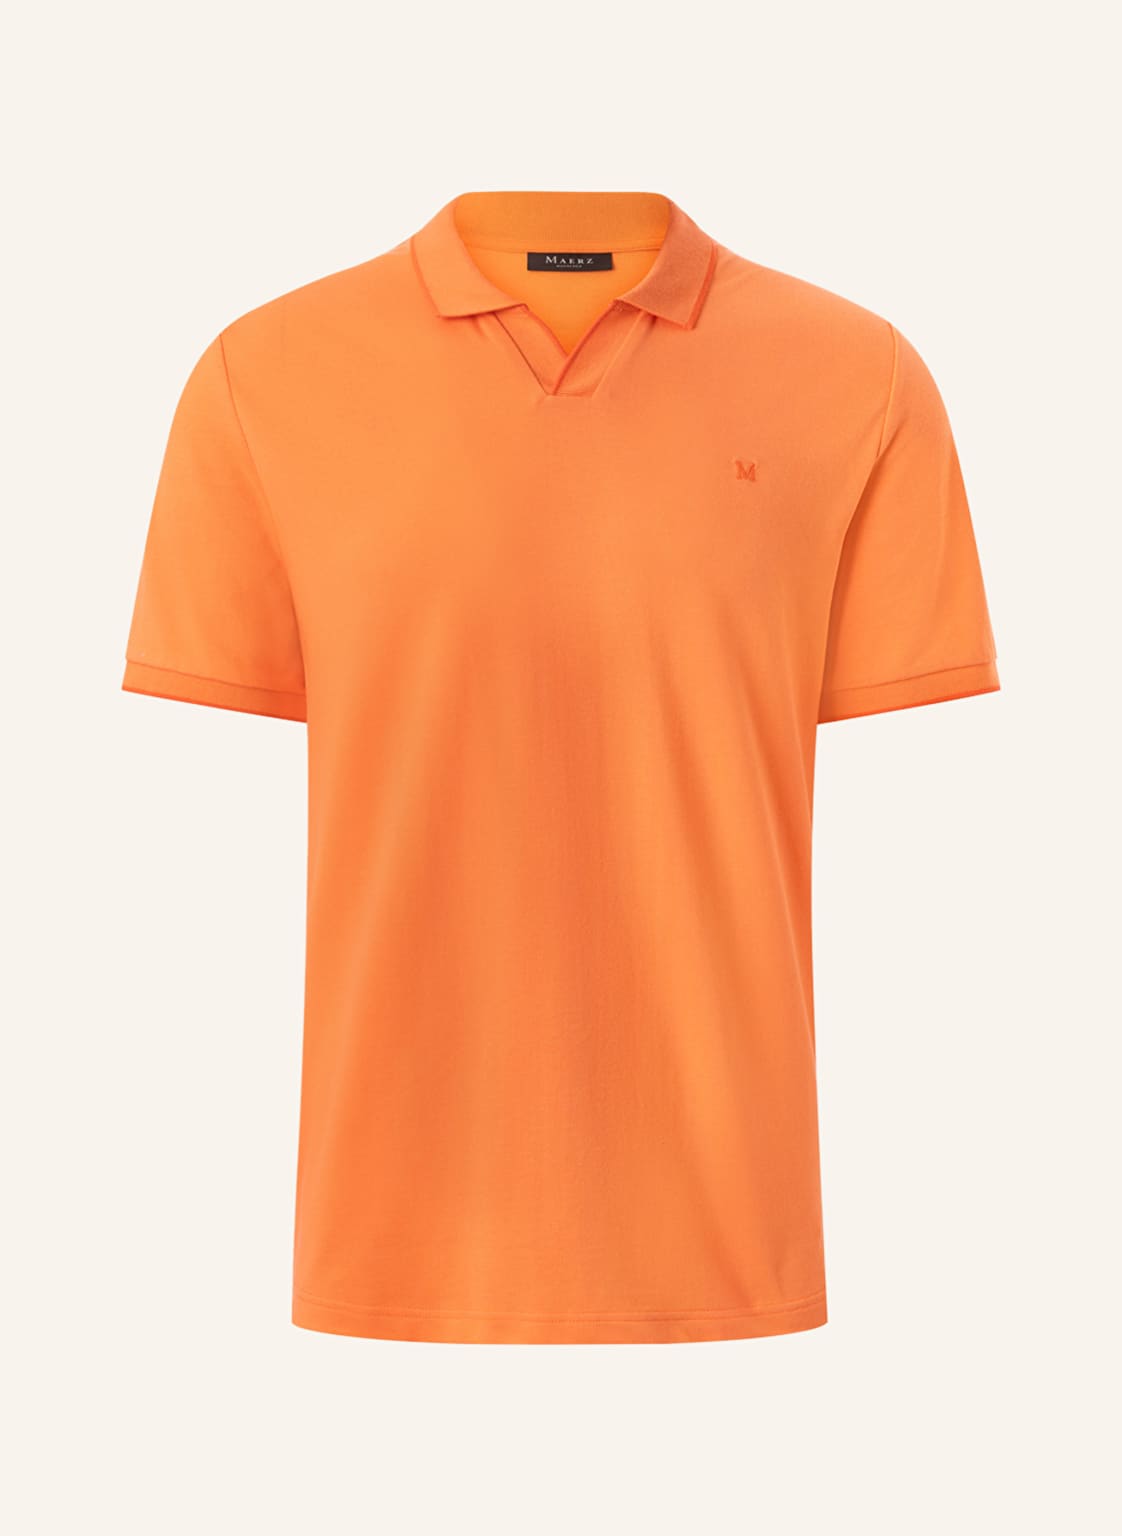 Maerz Muenchen Piqué-Poloshirt orange von maerz muenchen